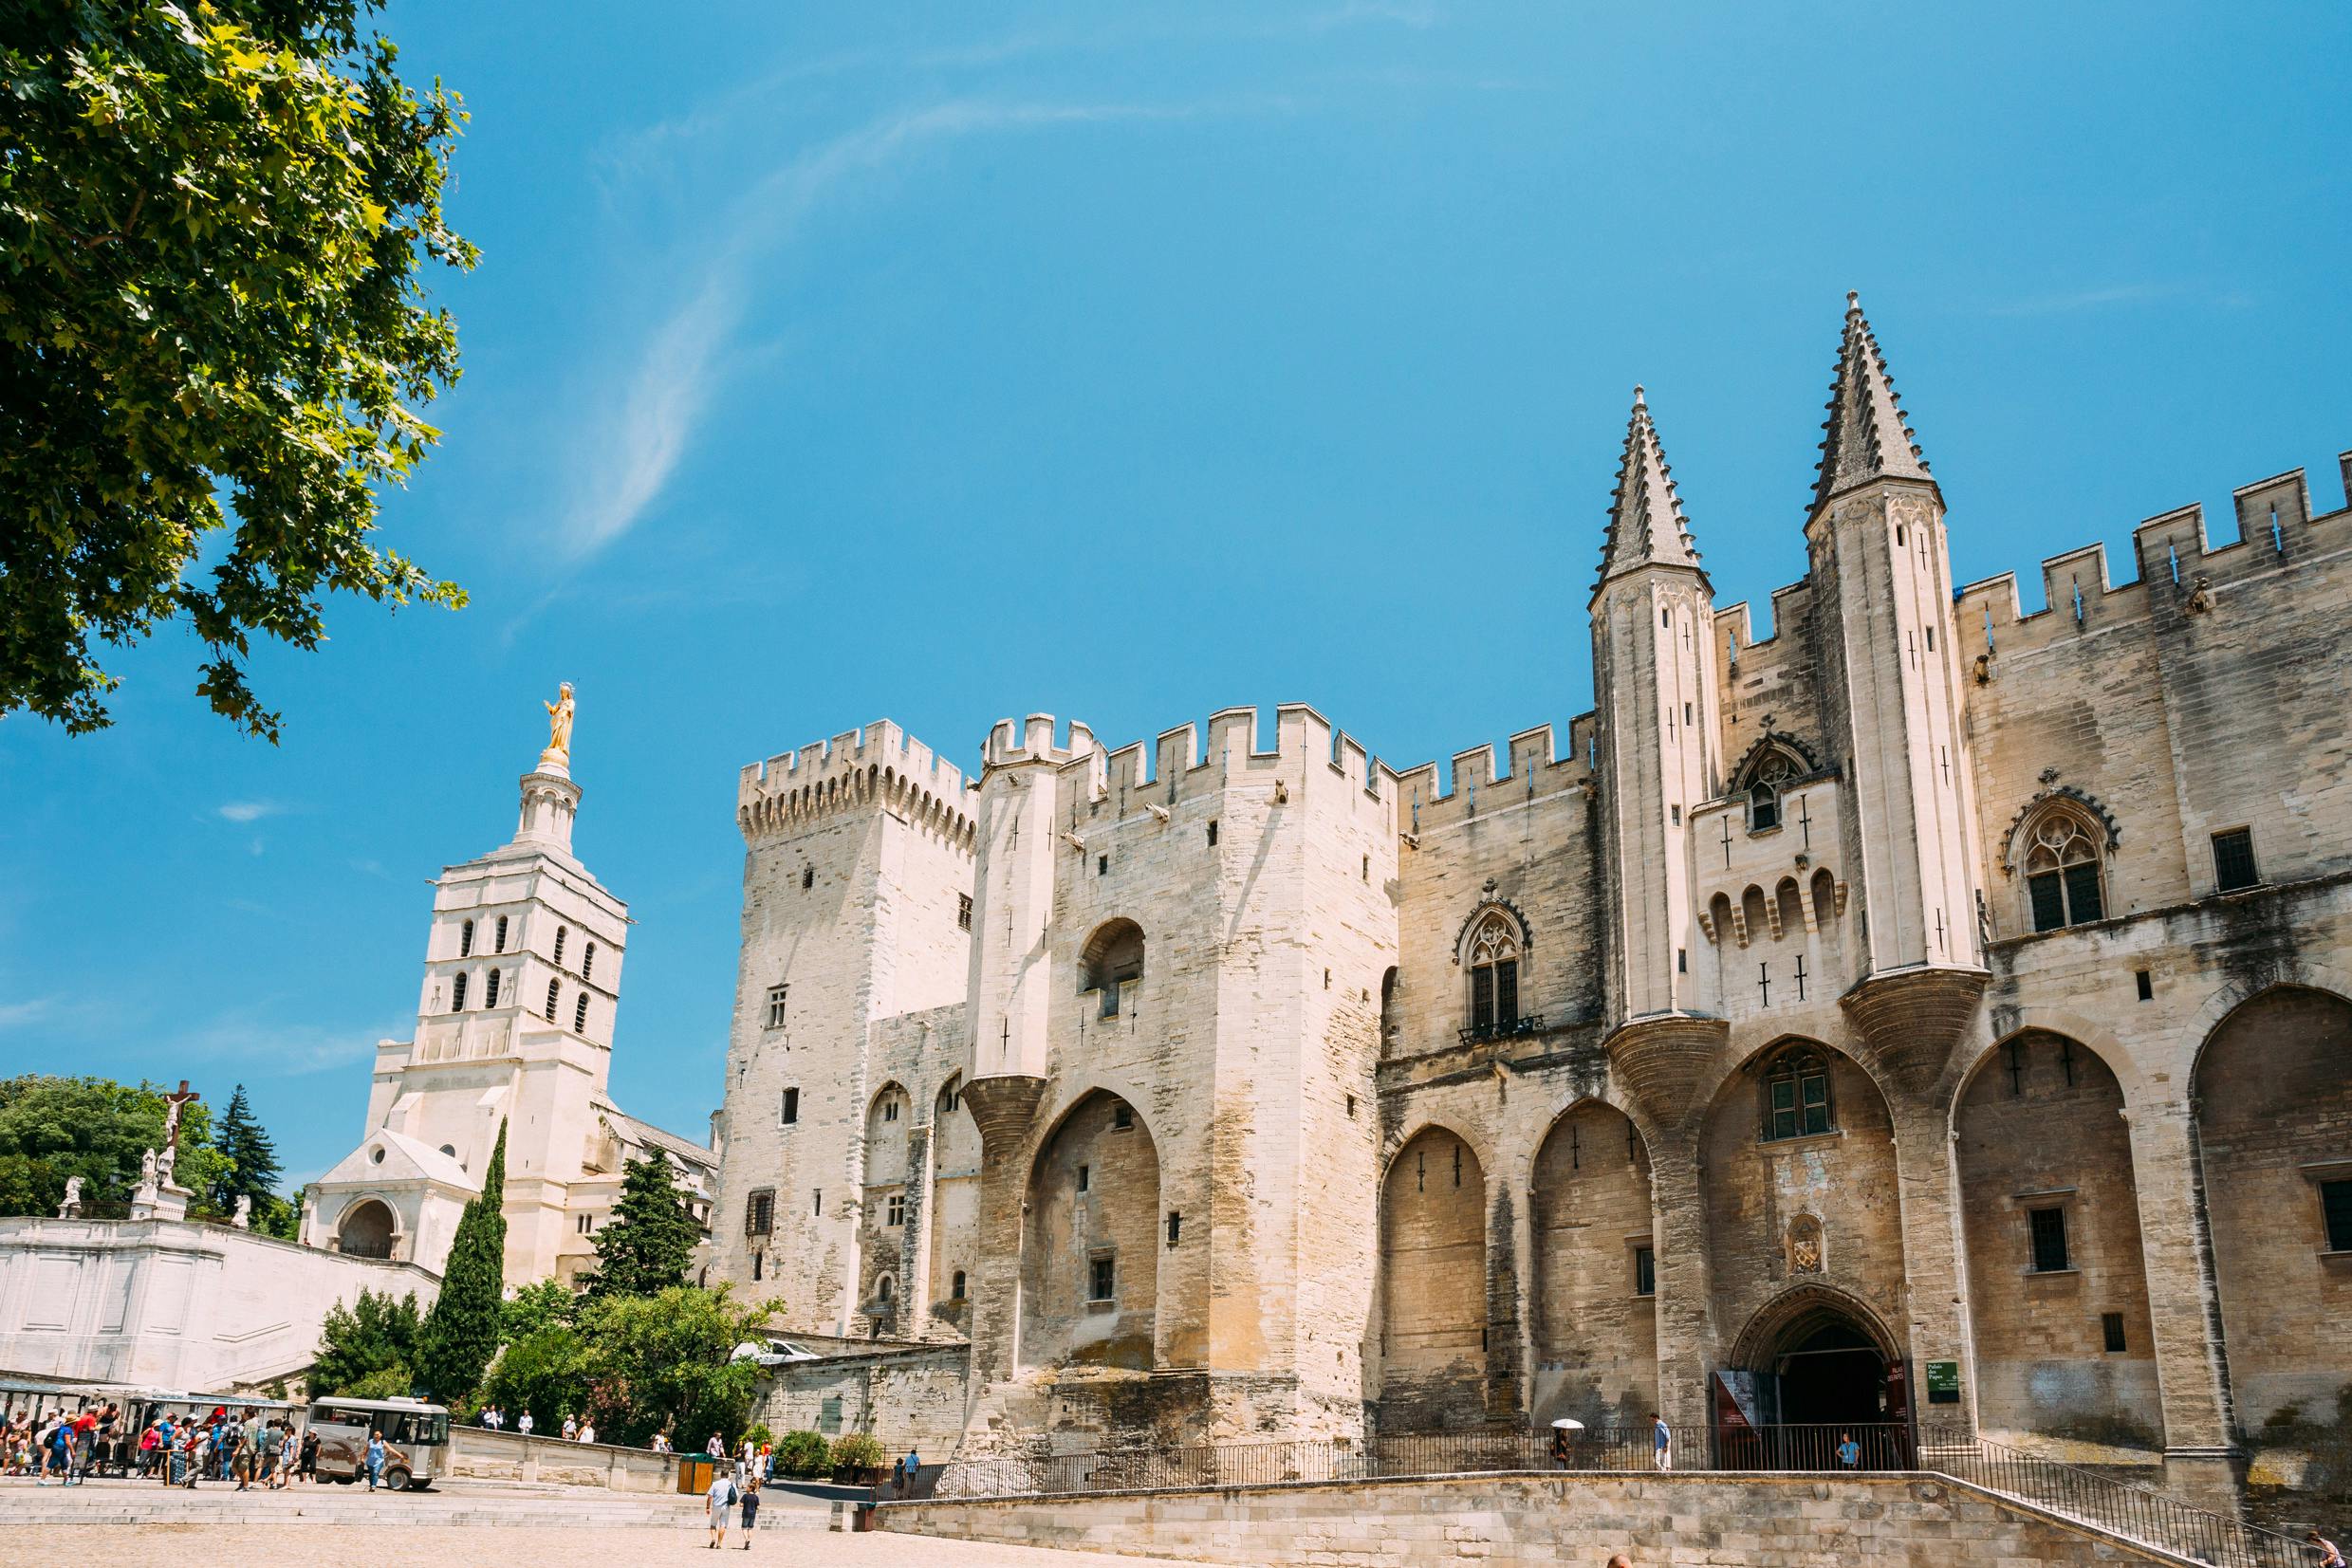 Full day tour of Avignon, Châteauneuf-du-Pape and Les Baux de Provence